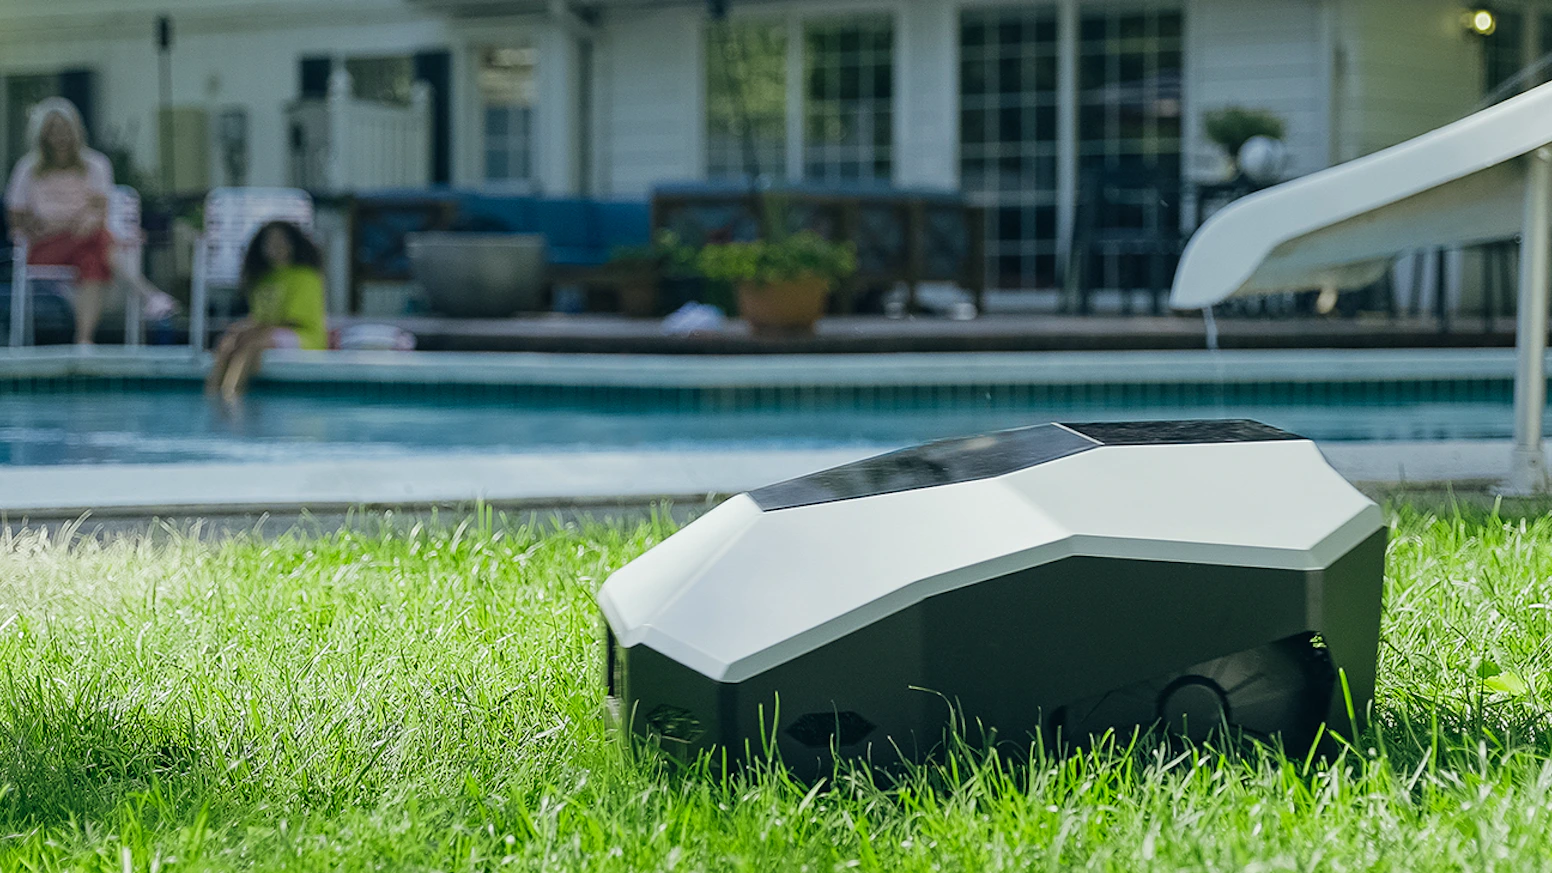 Lawna smart lawn mower